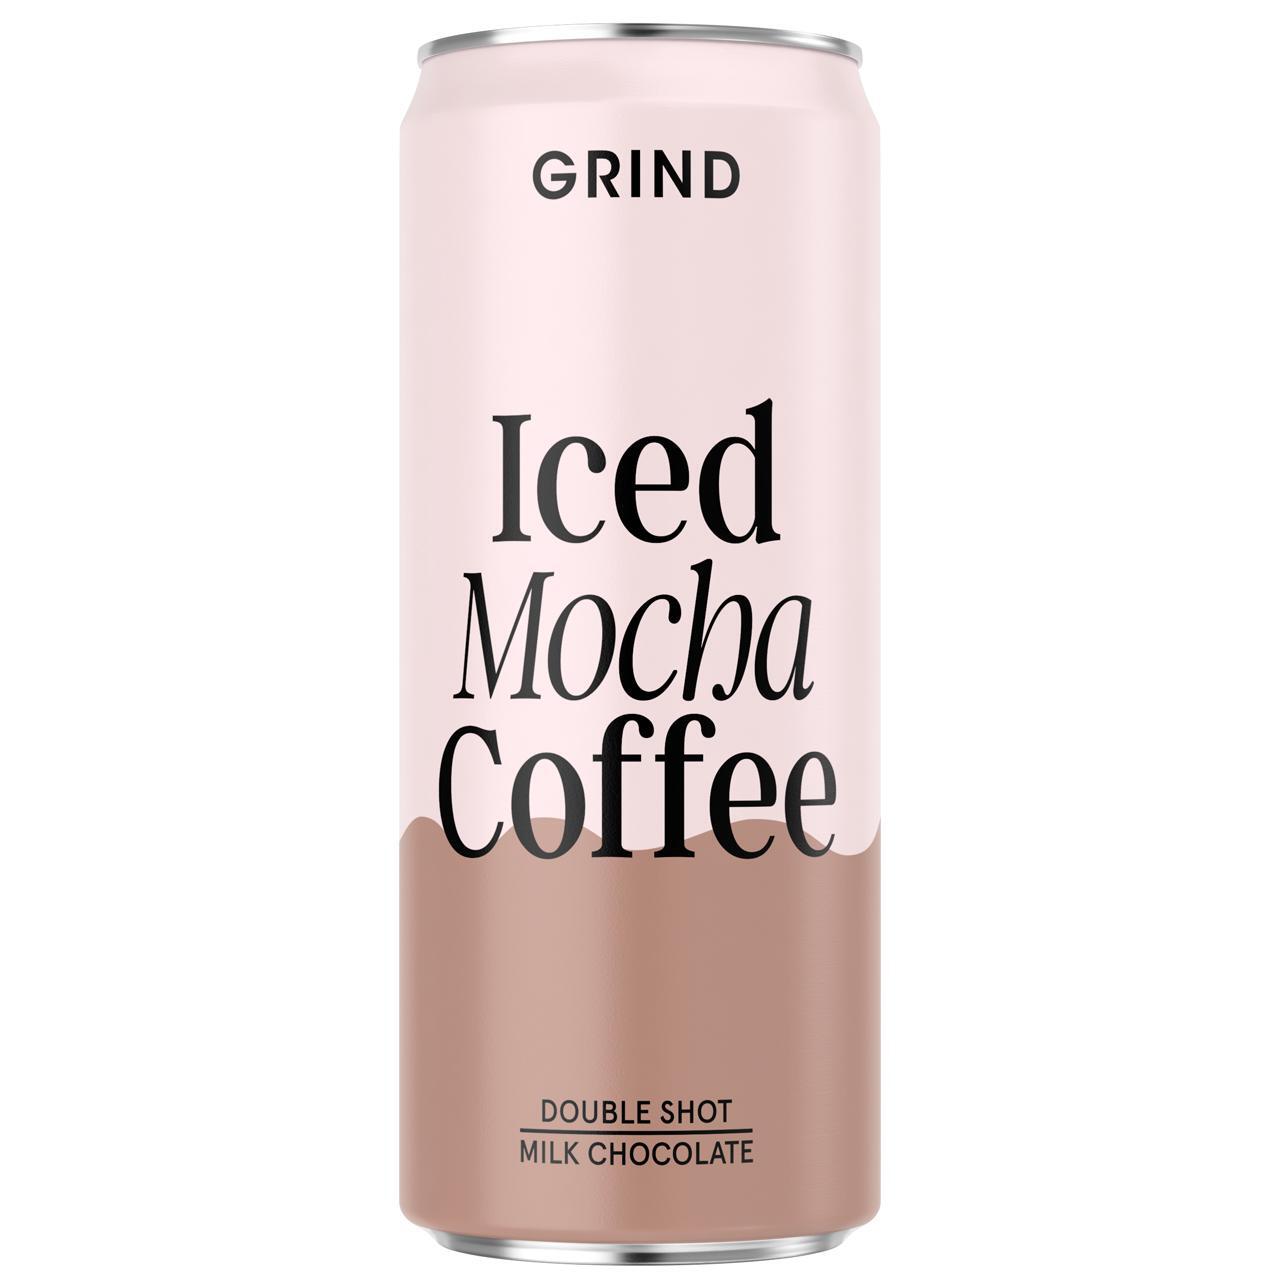 Grind Iced Mocha Coffee 250ml